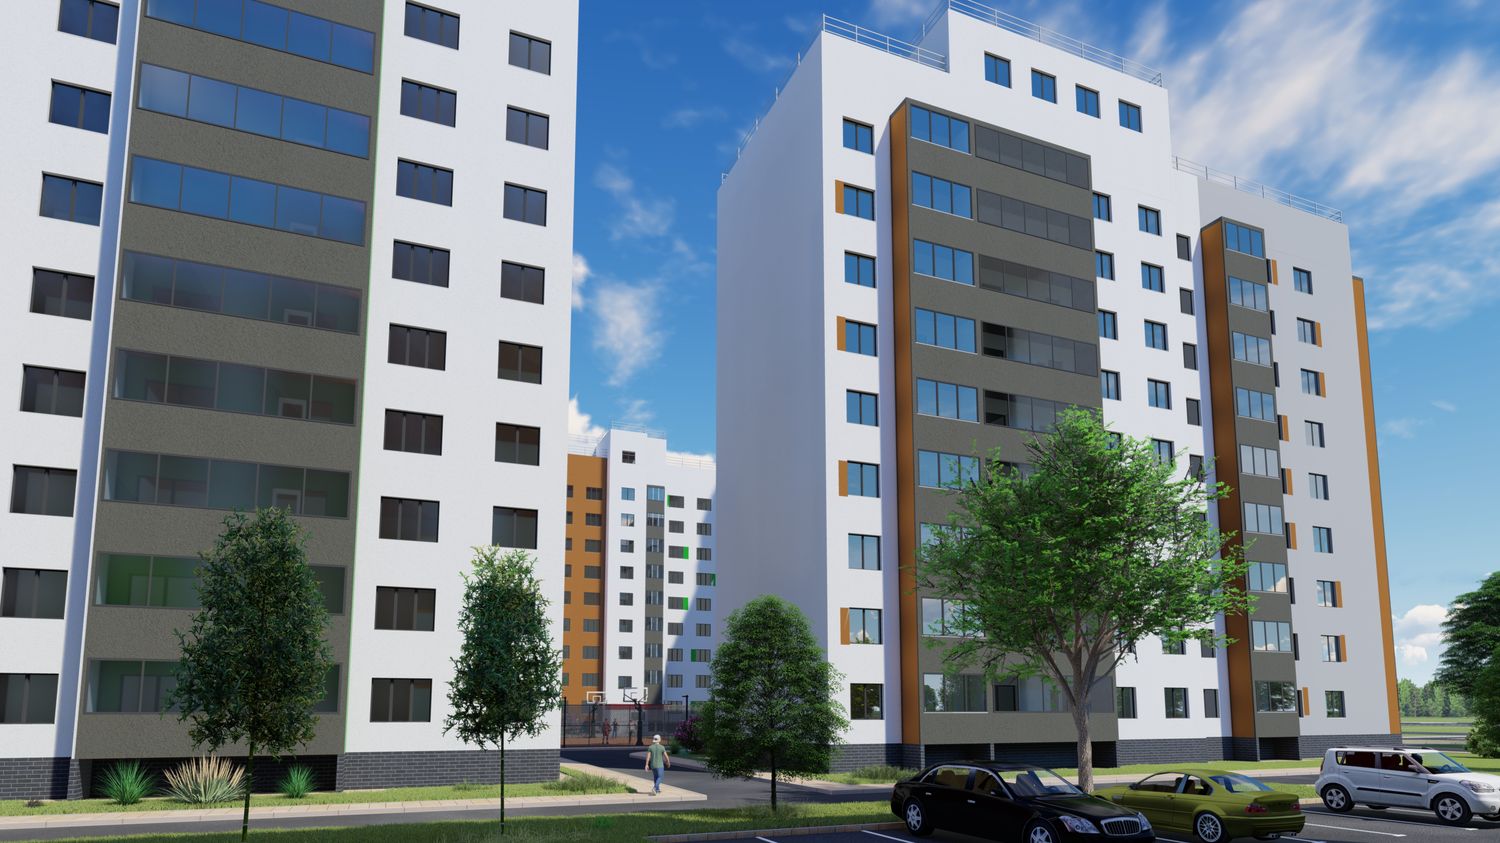 Принципиально “Новый город”: жилой комплекс комфорт-класса строится в Канавинском районе 12345678 - фото 5